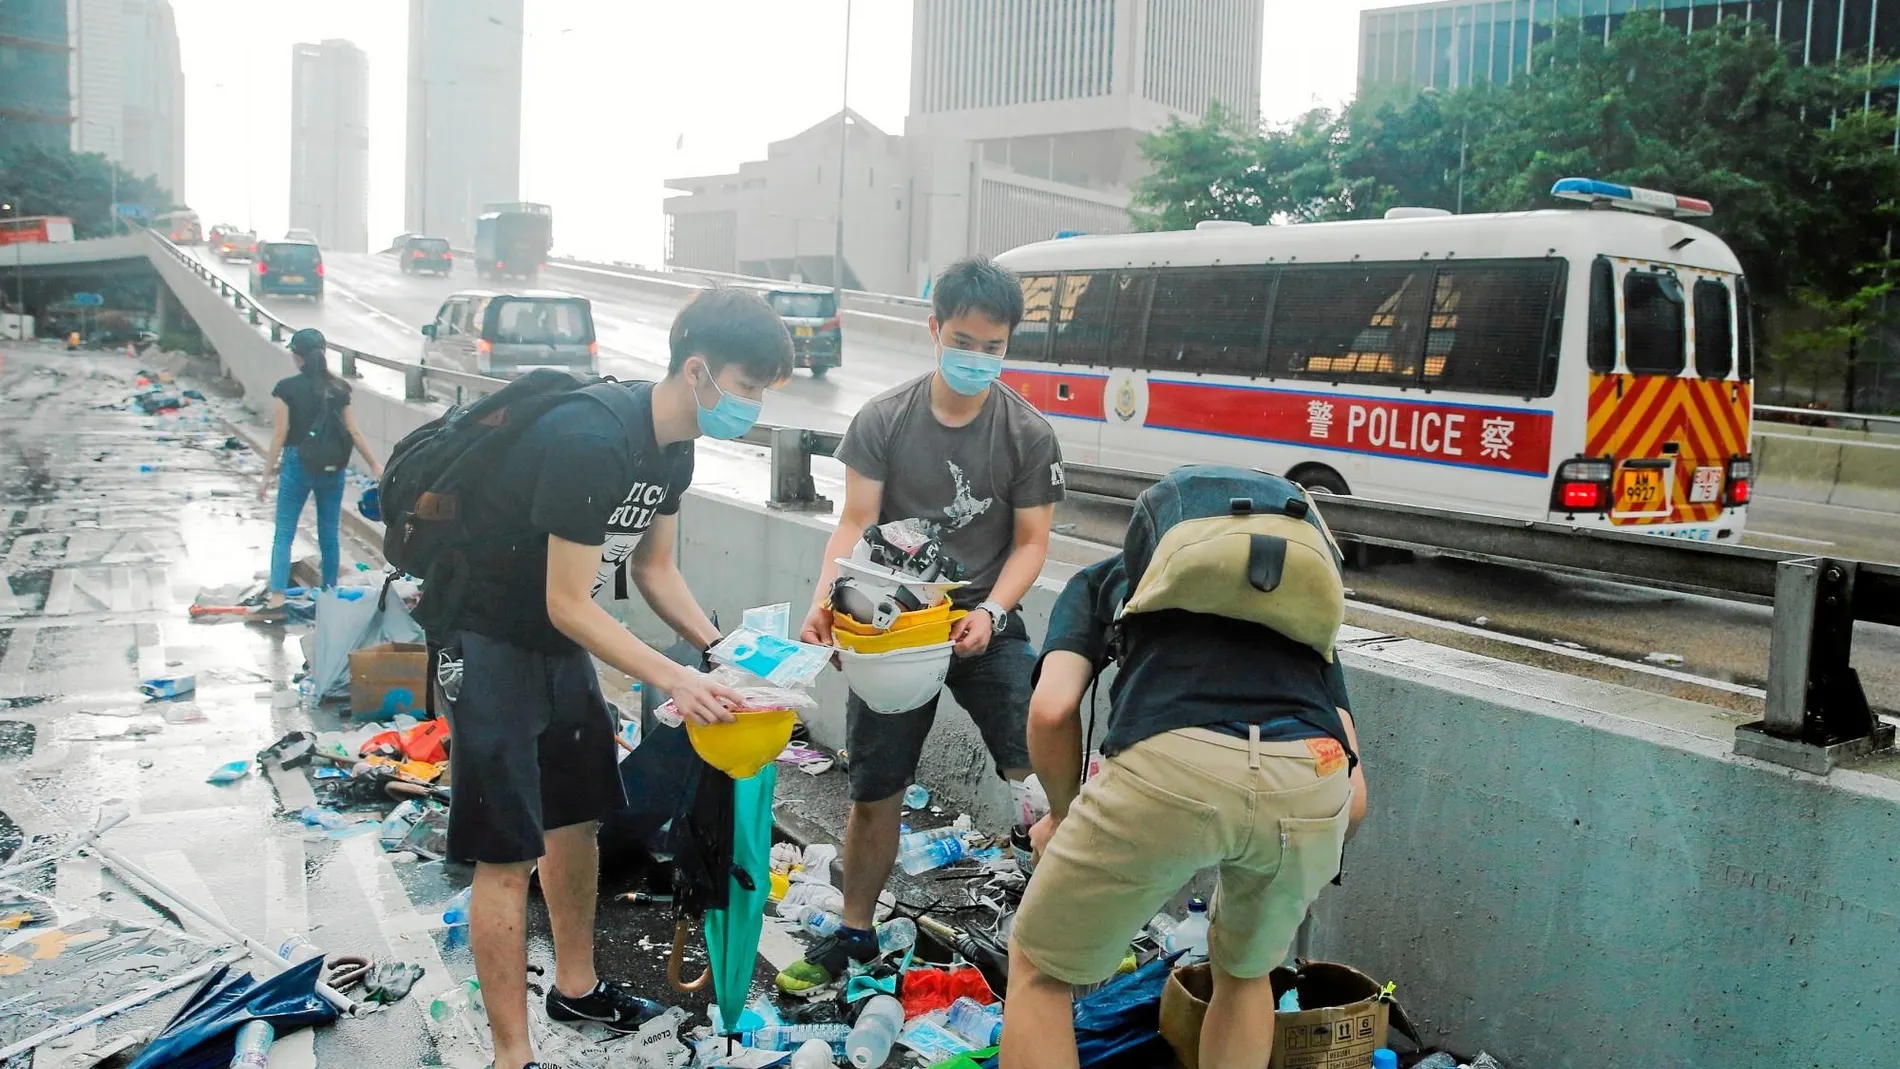 Varios jóvenes recogen cascos y paraguas de entre la basura generada tras las cargas policiales / Reuters